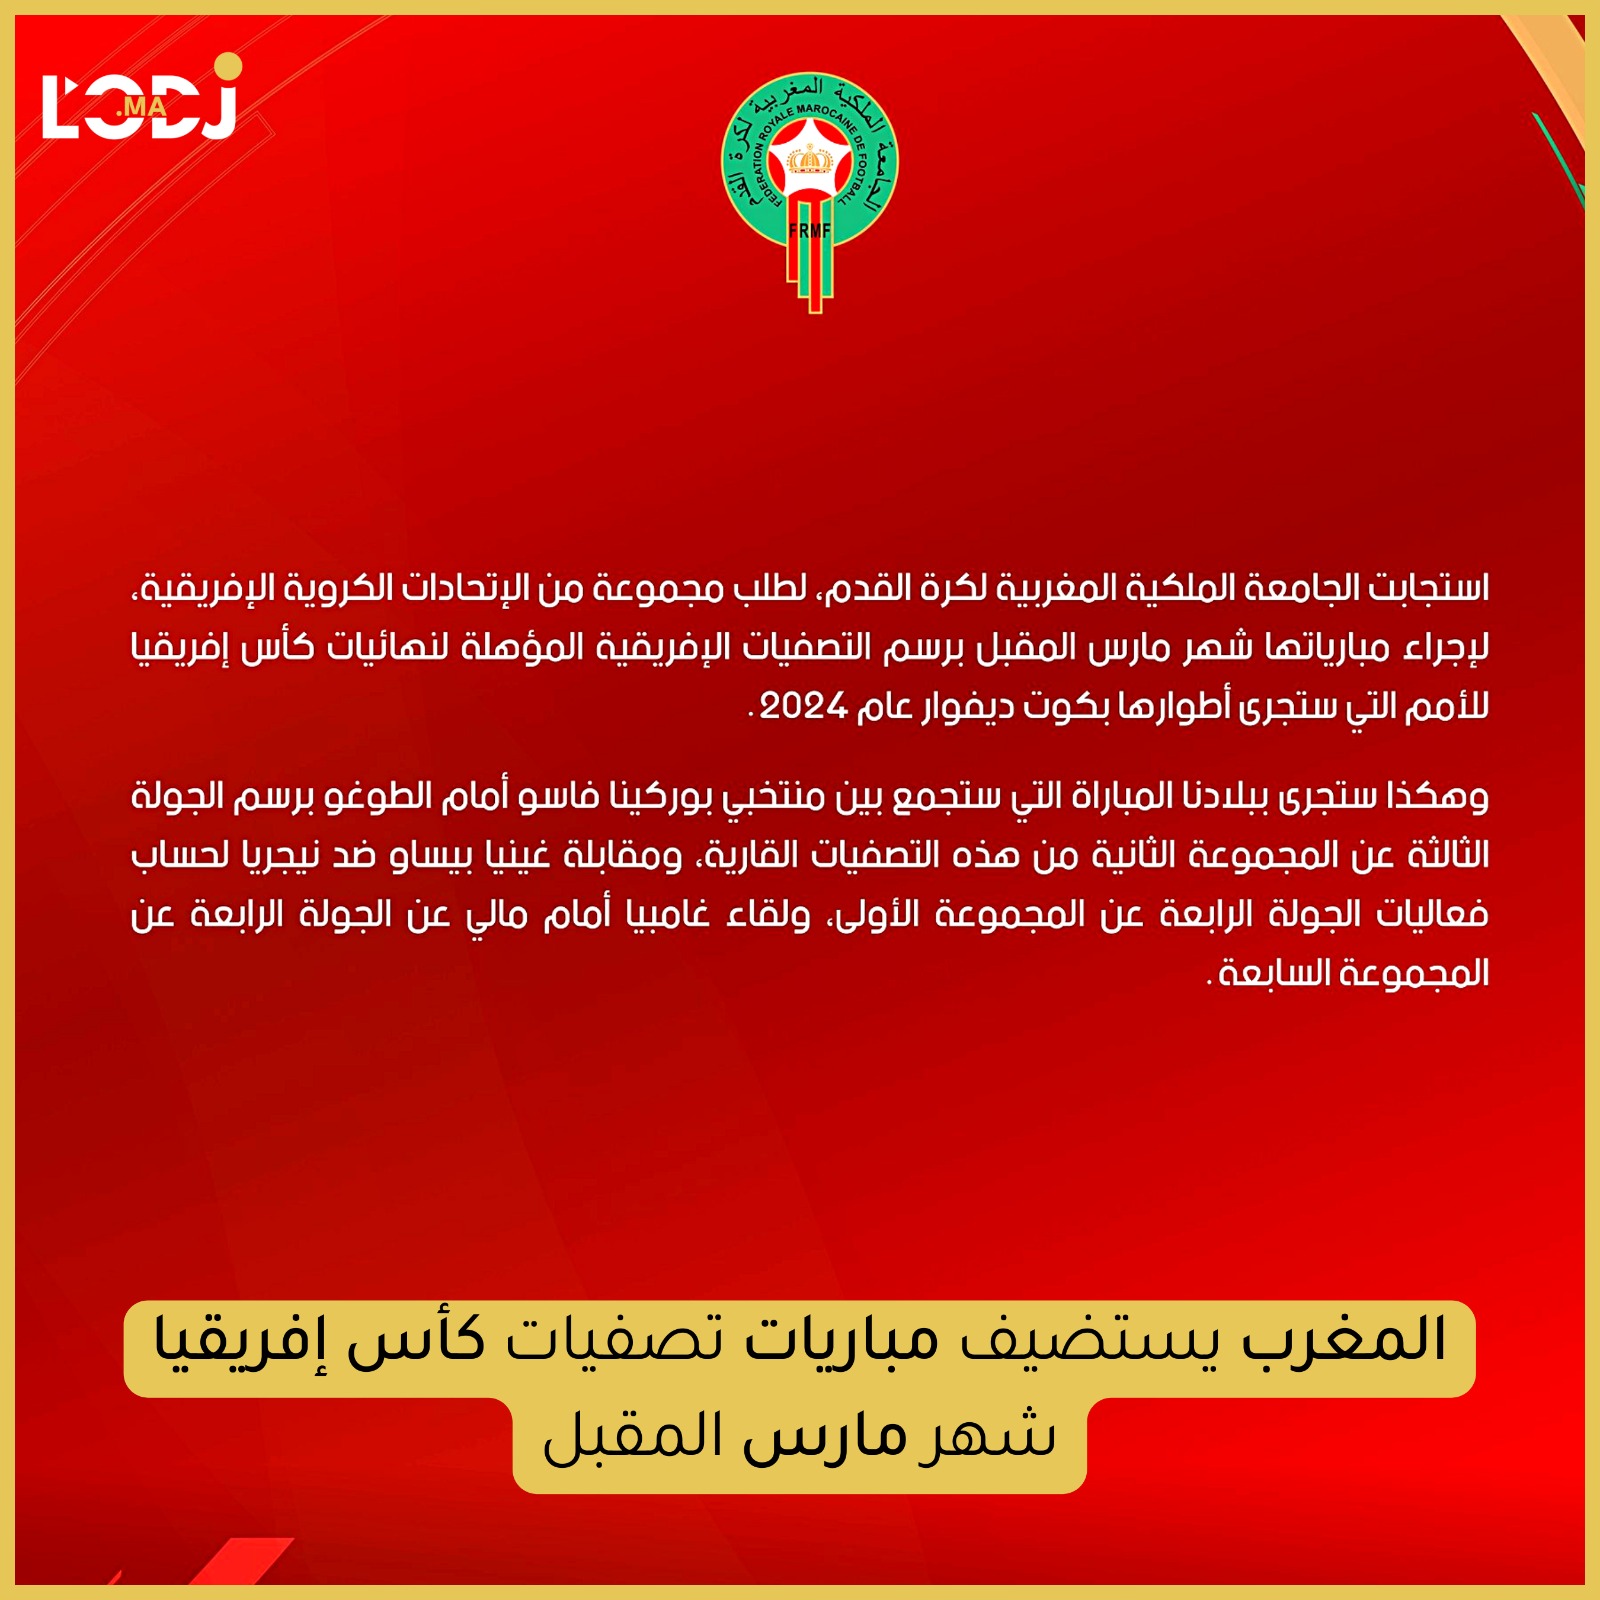 المغرب يستضيف مباريات تصفيات كأس إفريقيا شهر مارس المقبل